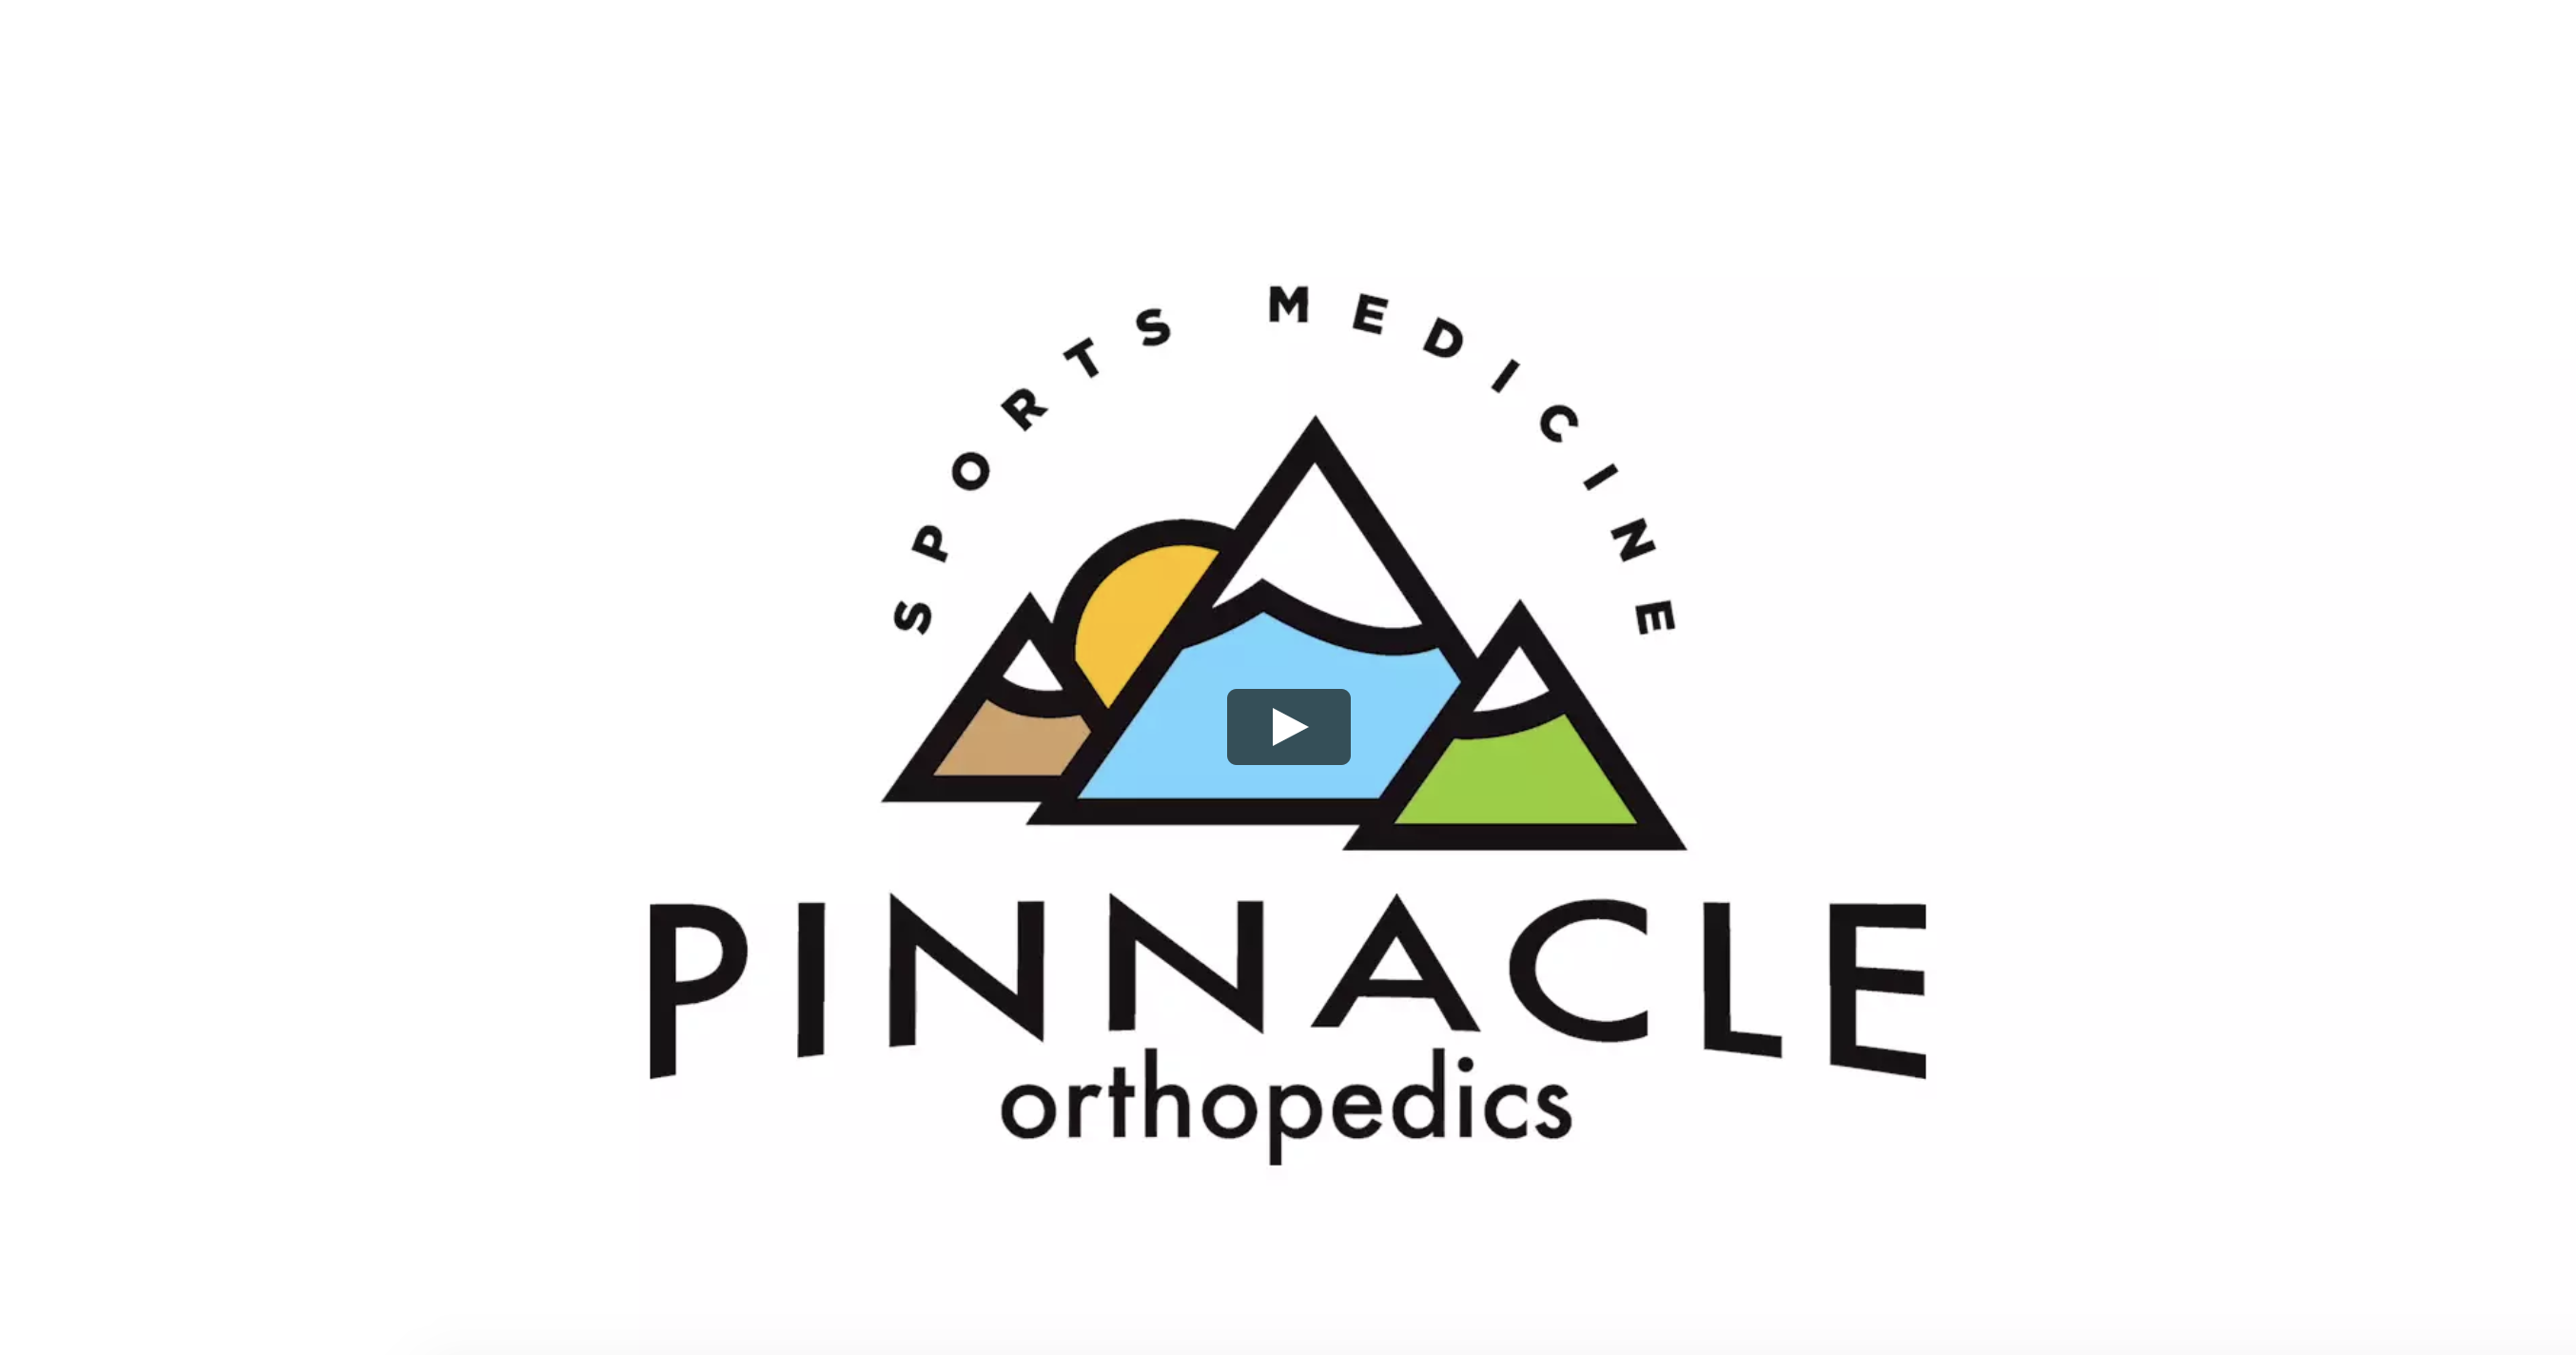 Pinnacle Orthopedics & Sports Medicine